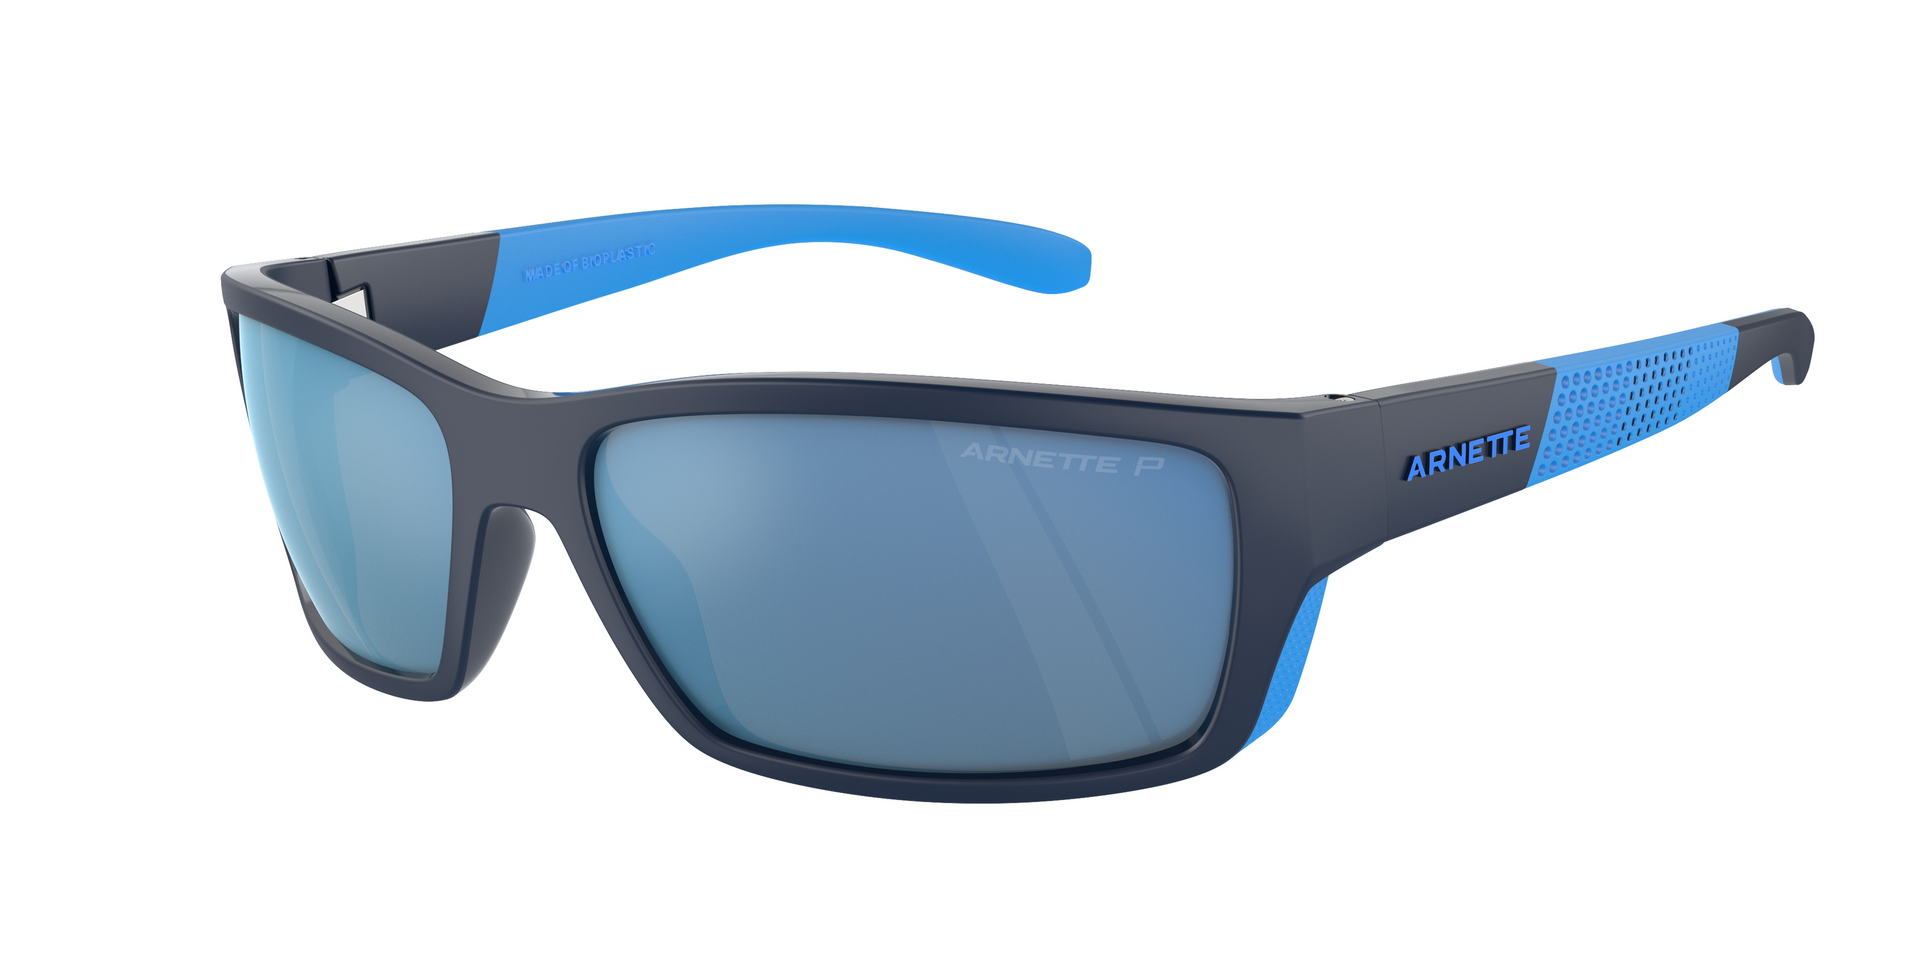 Das Bild zeigt die Sonnenbrille AN4336 275422 von der Marke Arnette in schwarz/blau.